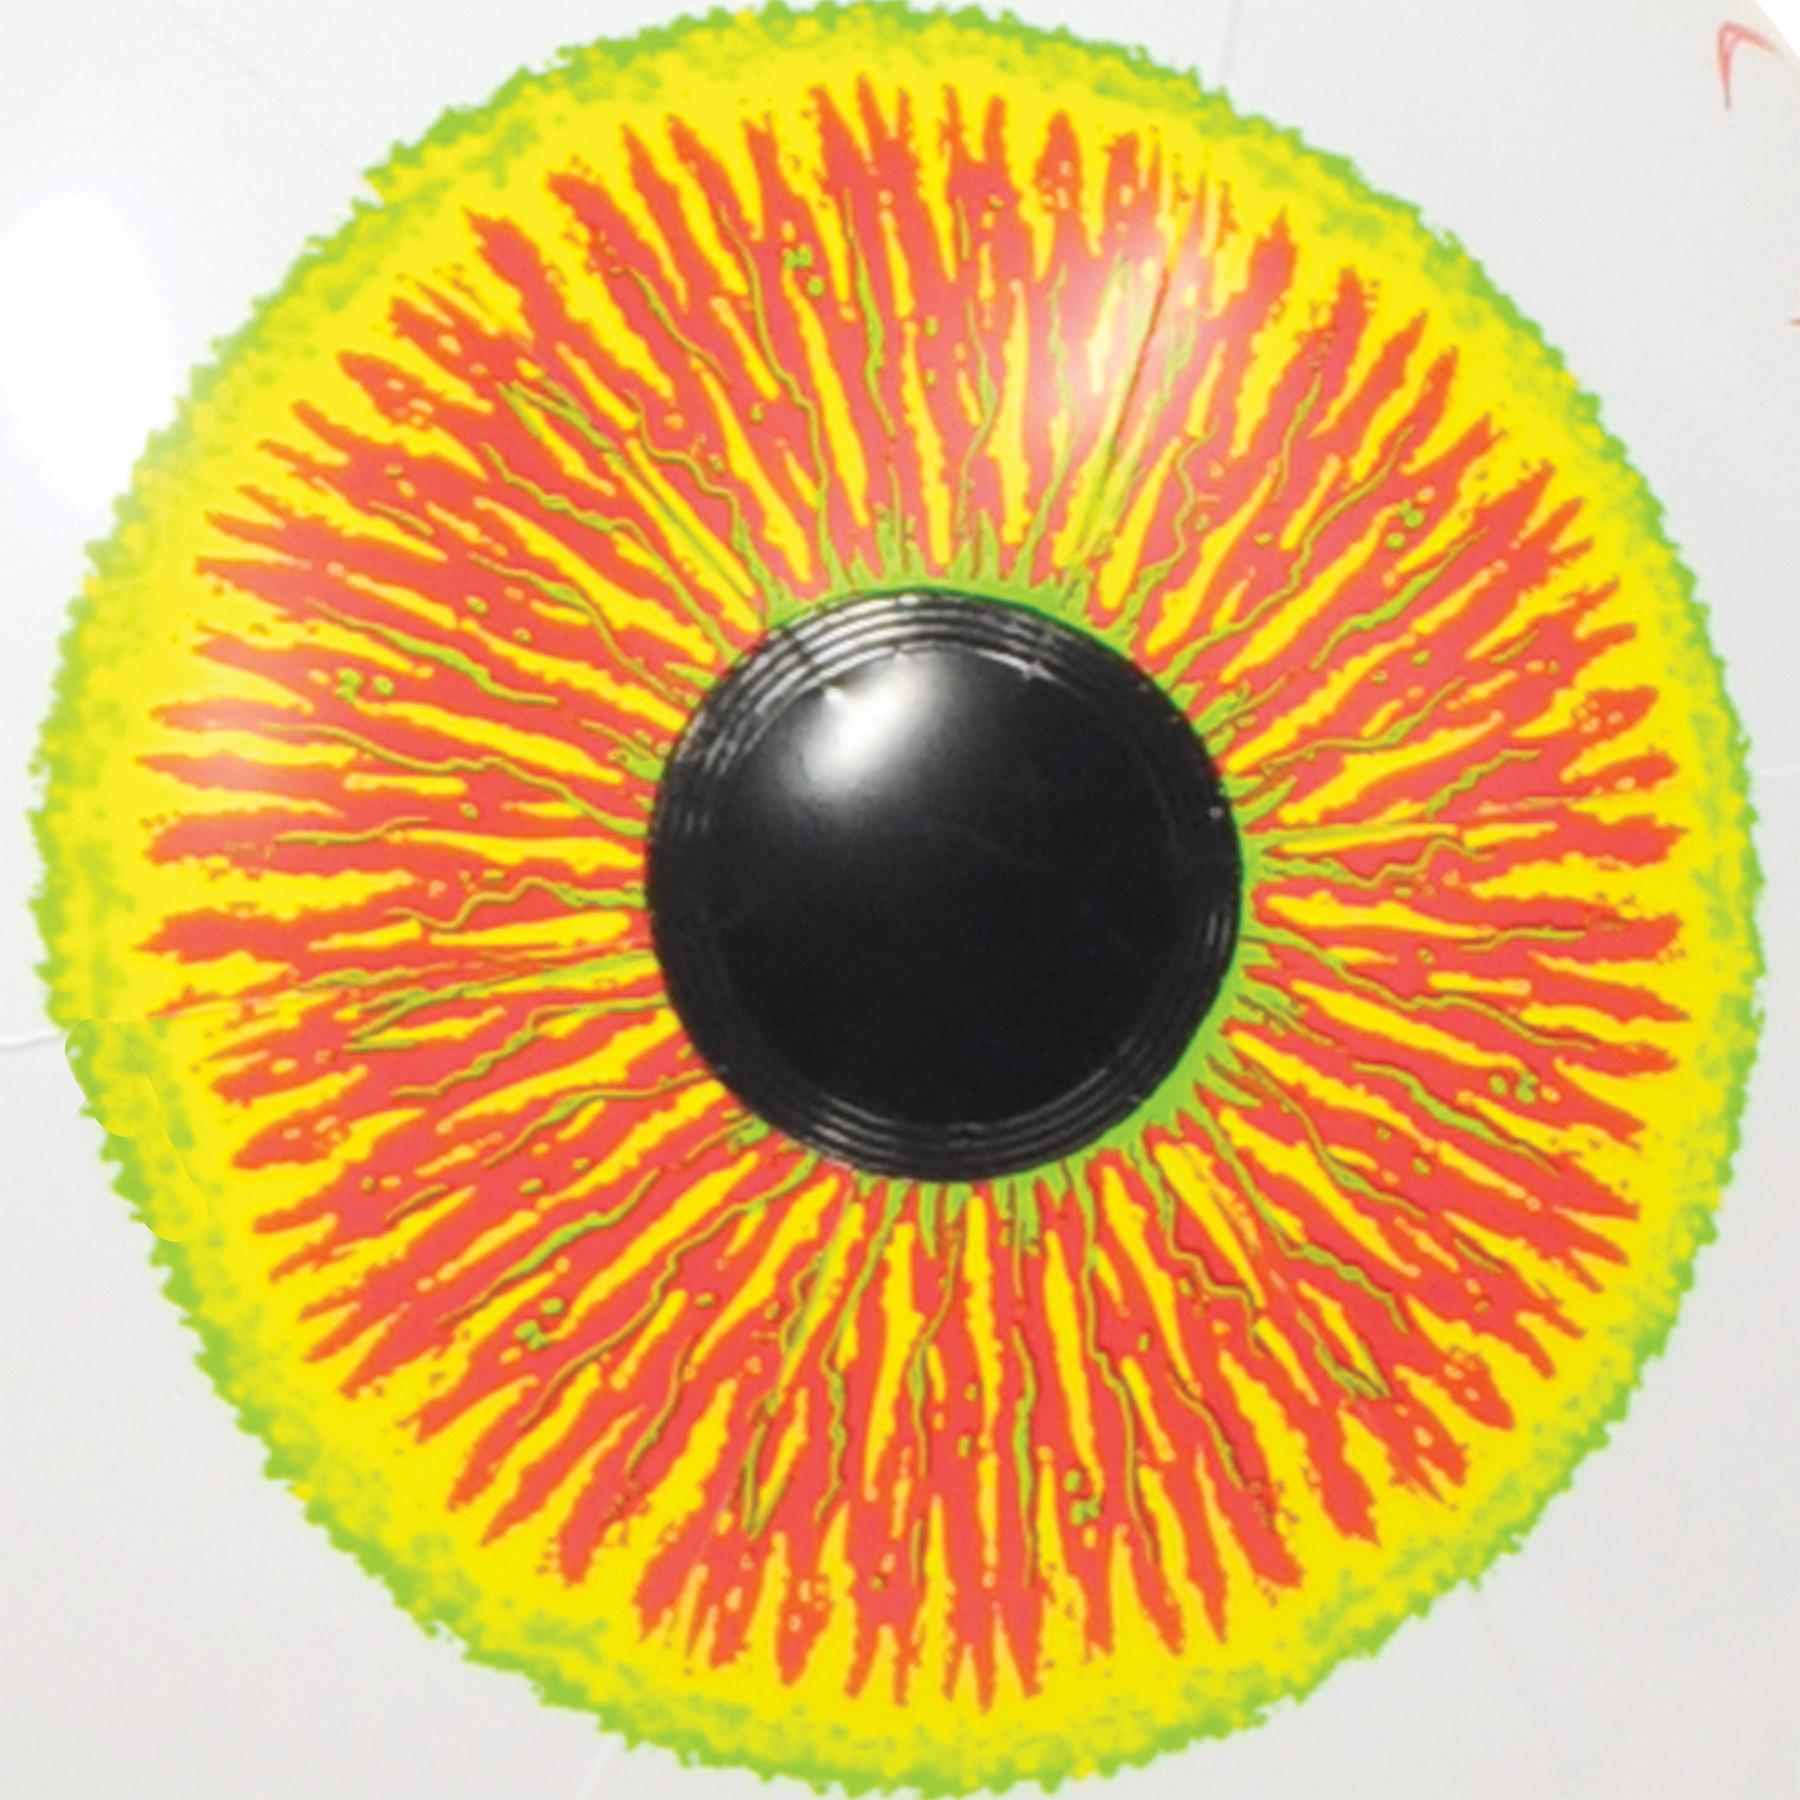 Beistle Halloween Inflatable Eyeball